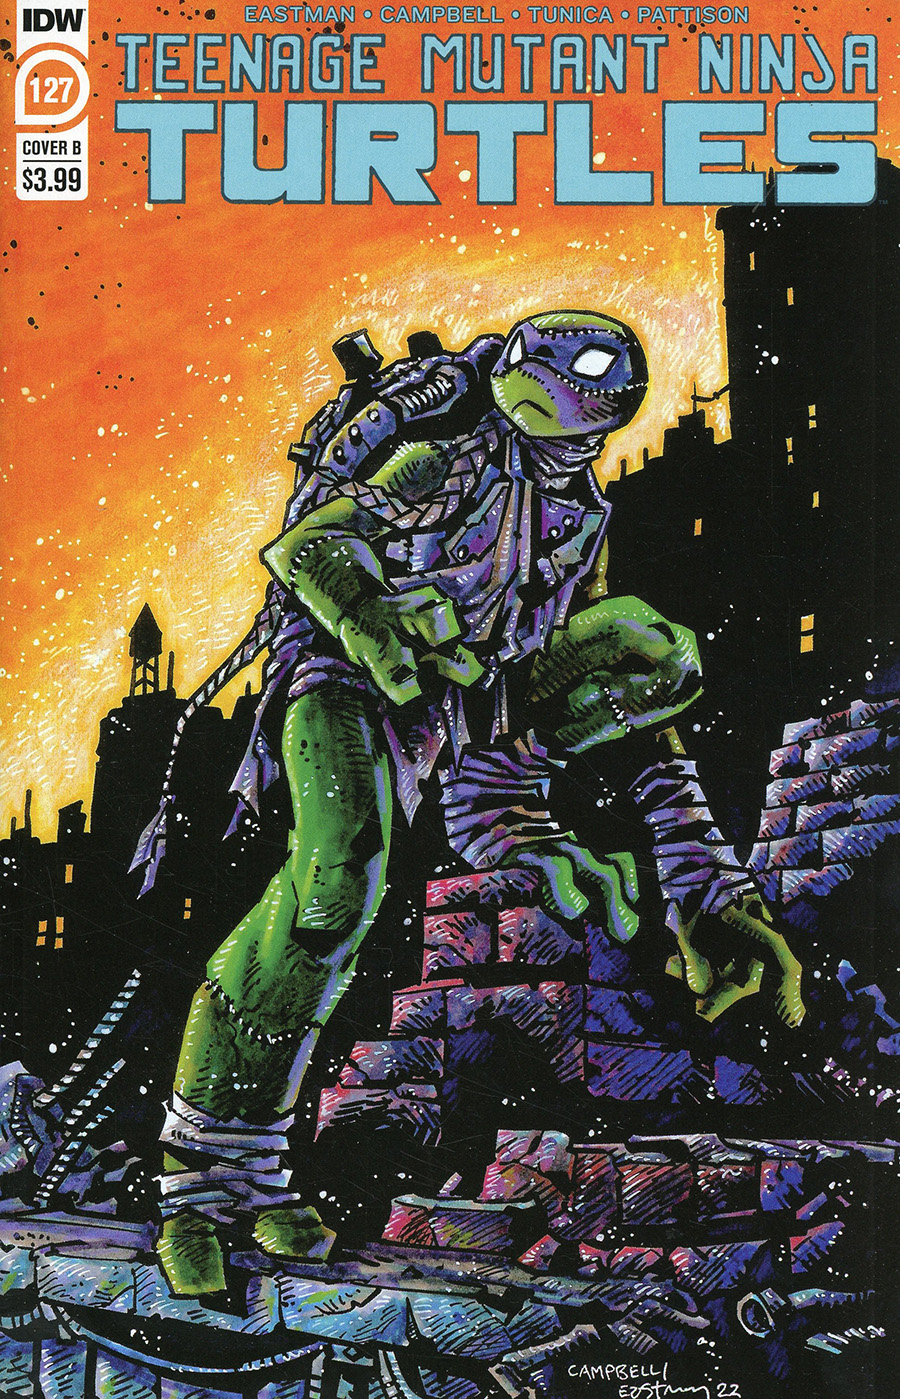 Teenage Mutant Ninja Turtles Vol 5 #127 Cover B Variant Kevin Eastman Cover